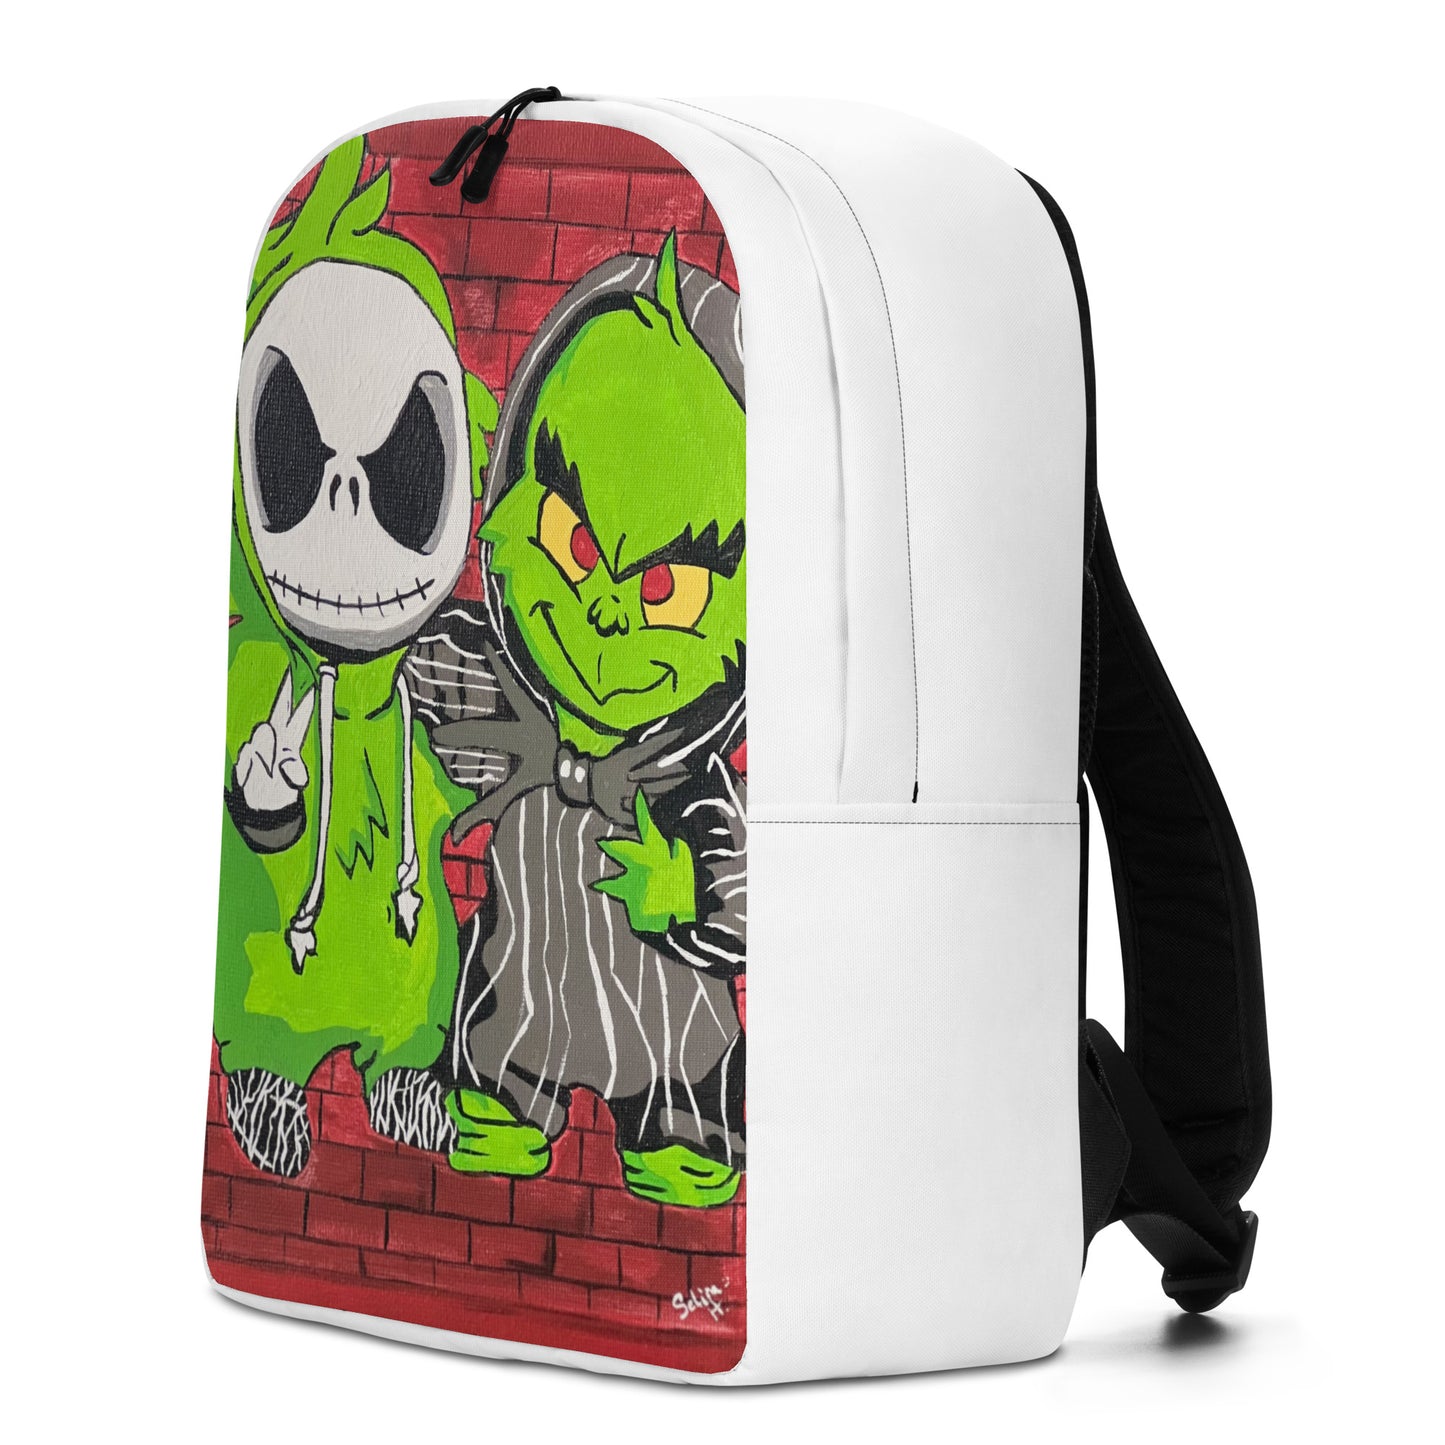 Lil Jack & Lil Grinch Chillen Backpack